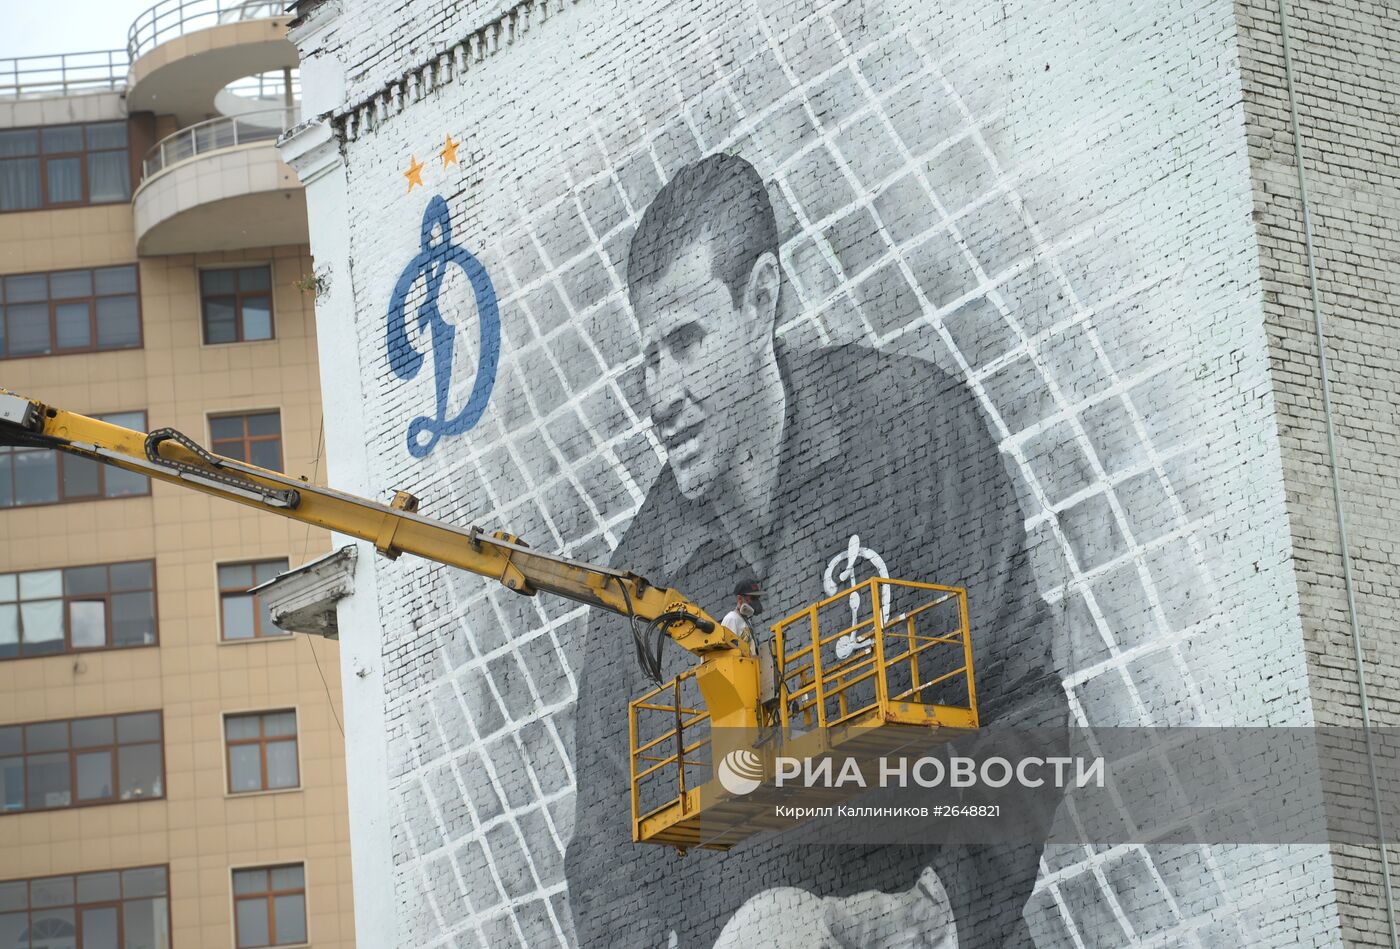 Граффити с изображением вратаря Льва Яшина